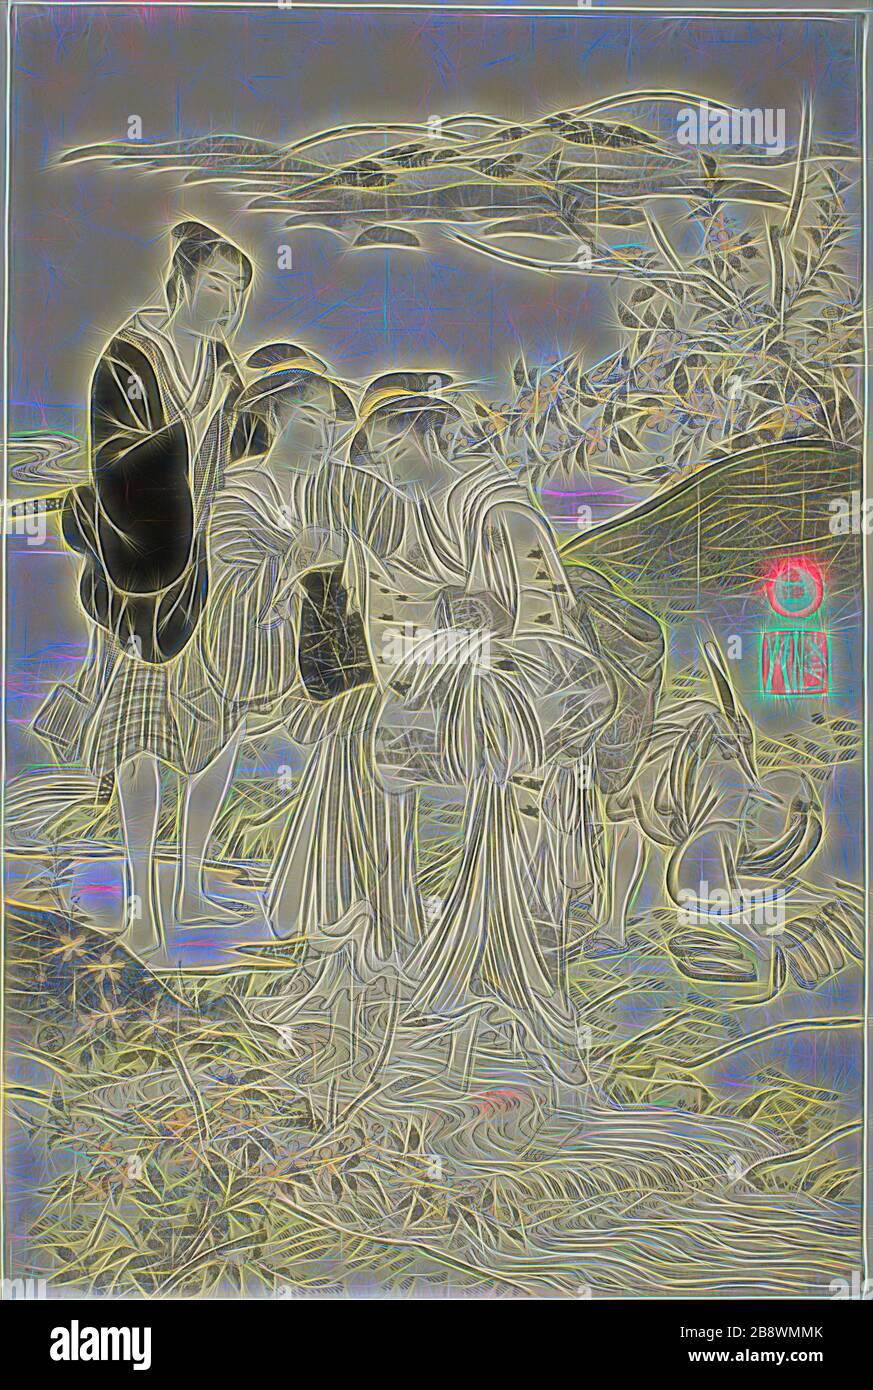 L'IDE Jewel River, ch. 1781/89, Kubo Shunman, japonais, 1757–1820, Japon, imprimé color woodblock, feuille d'oban hexaptych, 38,5 x 25,6 cm (15 1/8 x 10 1/16 in.), repensée par Gibon, design de glanissement chaleureux de la luminosité et des rayons de lumière. L'art classique réinventé avec une touche moderne. La photographie inspirée du futurisme, qui embrasse l'énergie dynamique de la technologie moderne, du mouvement, de la vitesse et révolutionne la culture. Banque D'Images